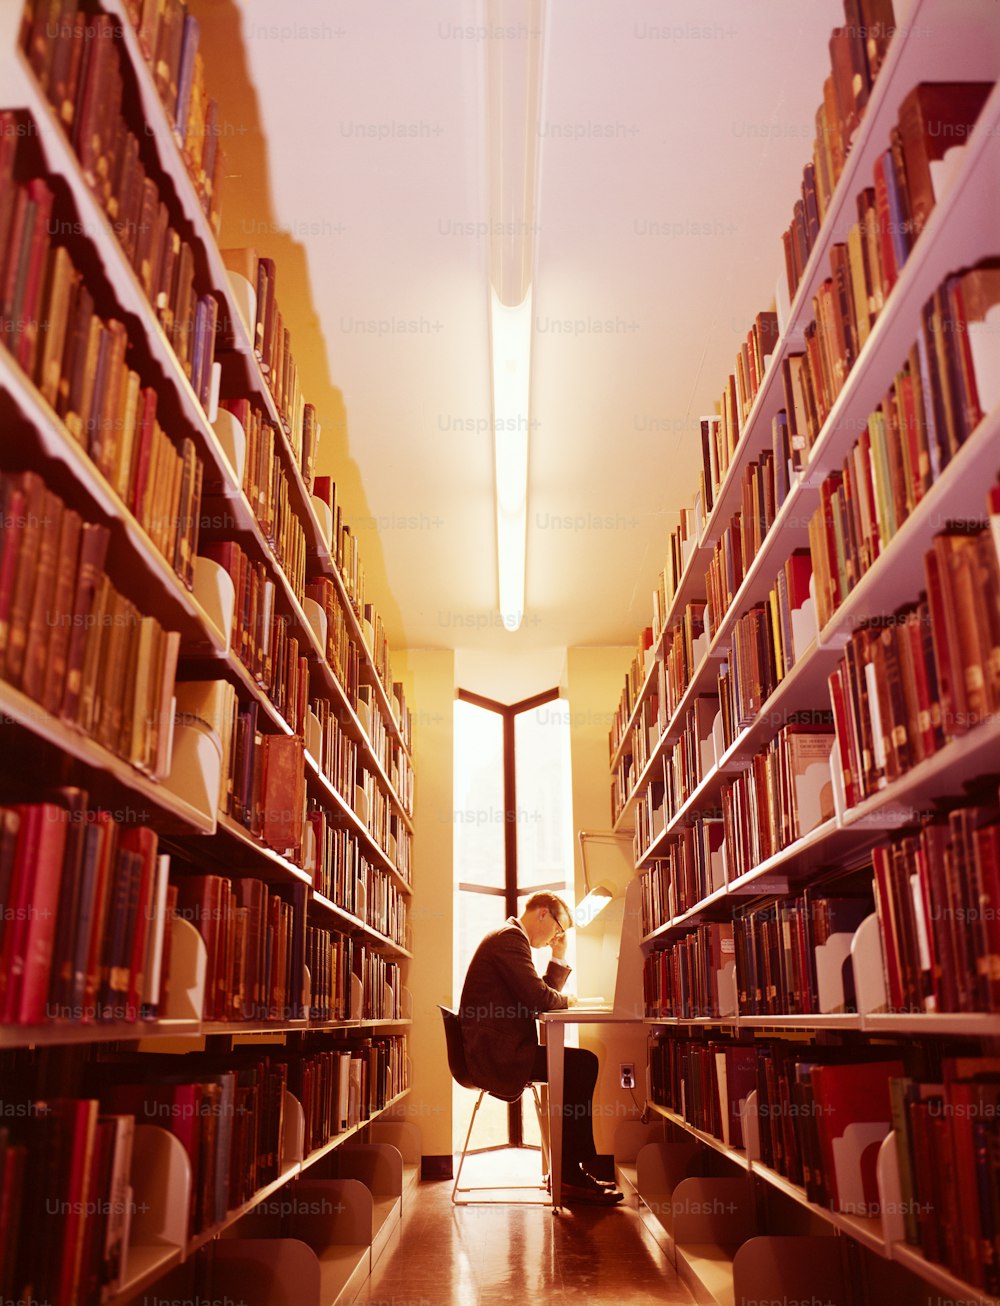 ÉTATS-UNIS - Vers les années 1960 : Homme dans la bibliothèque.